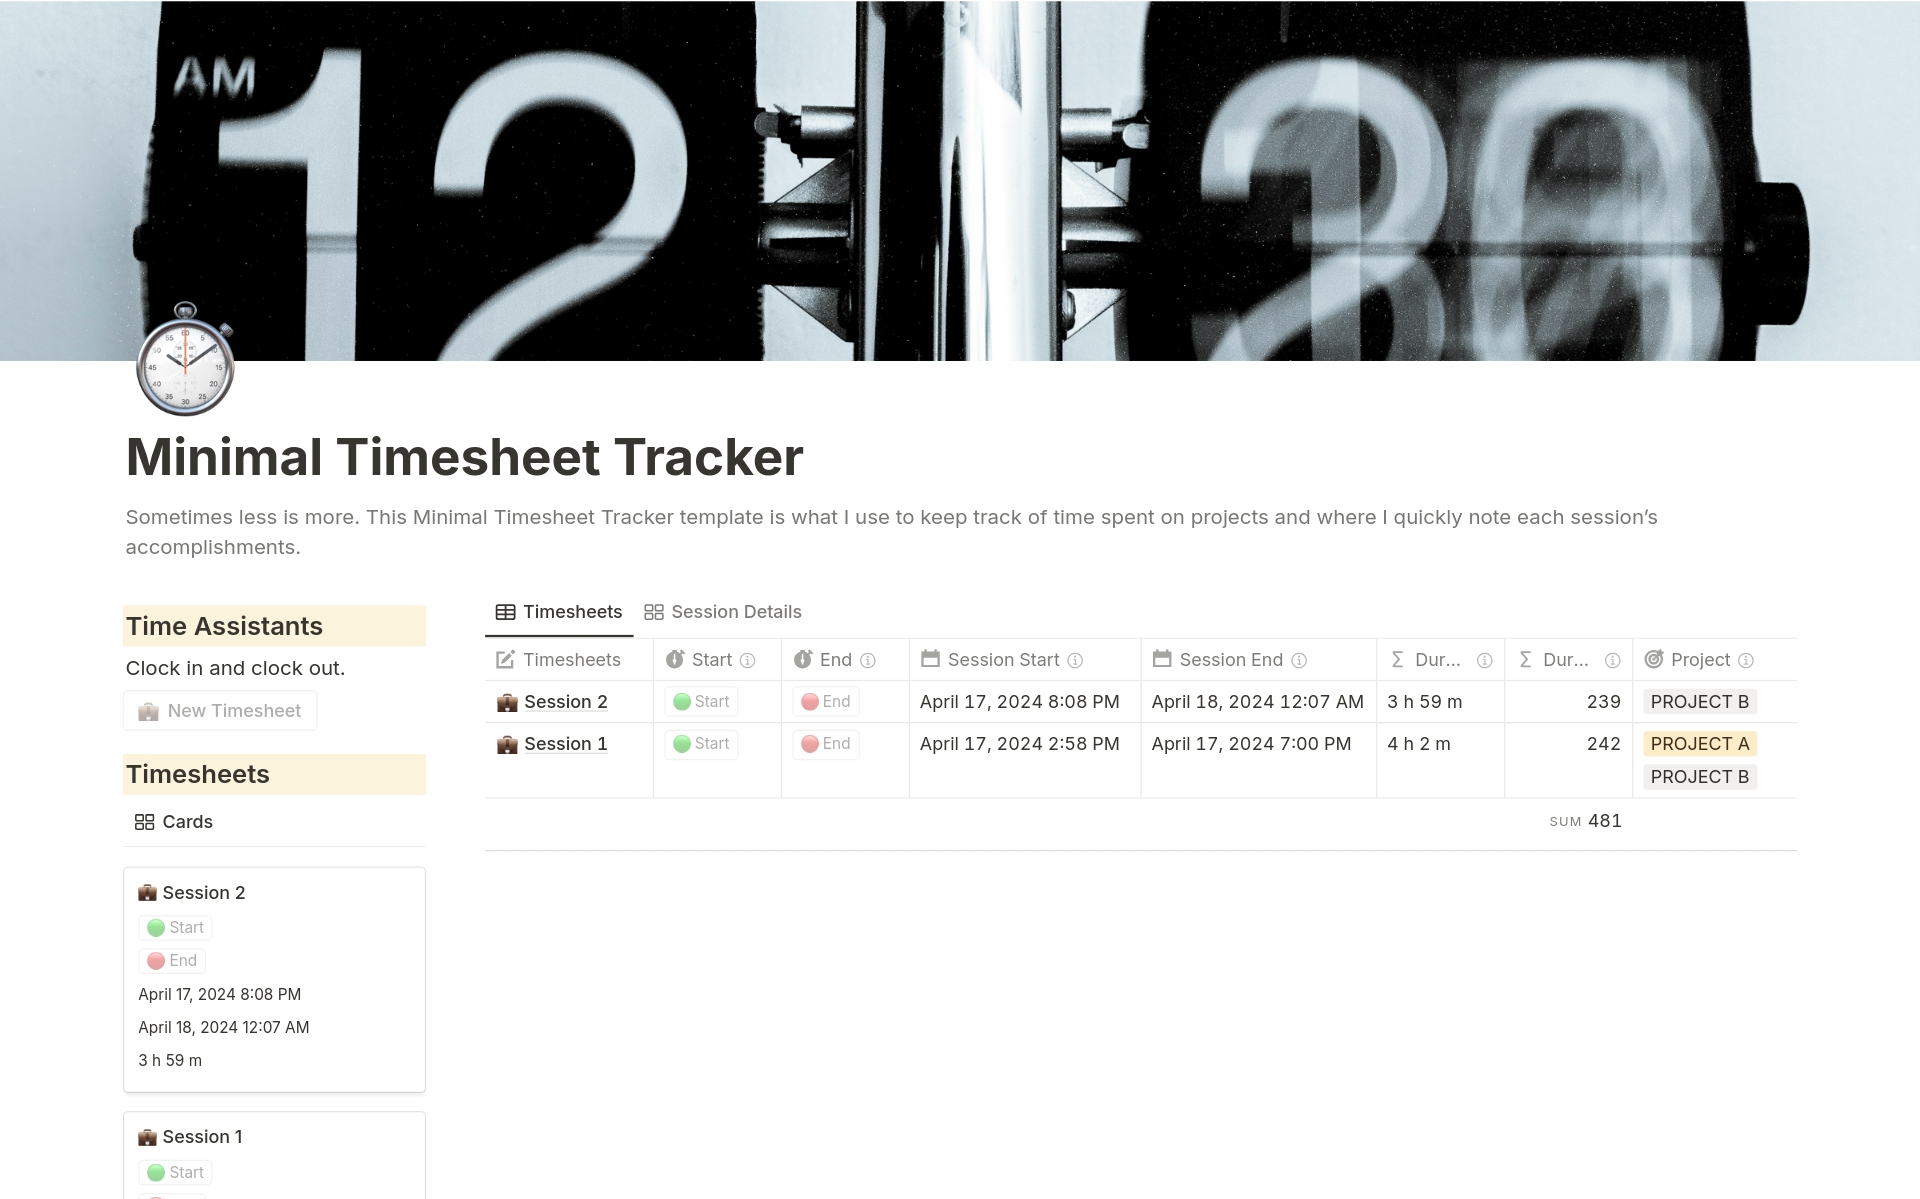 Uma prévia do modelo para Minimal Timesheet Tracker